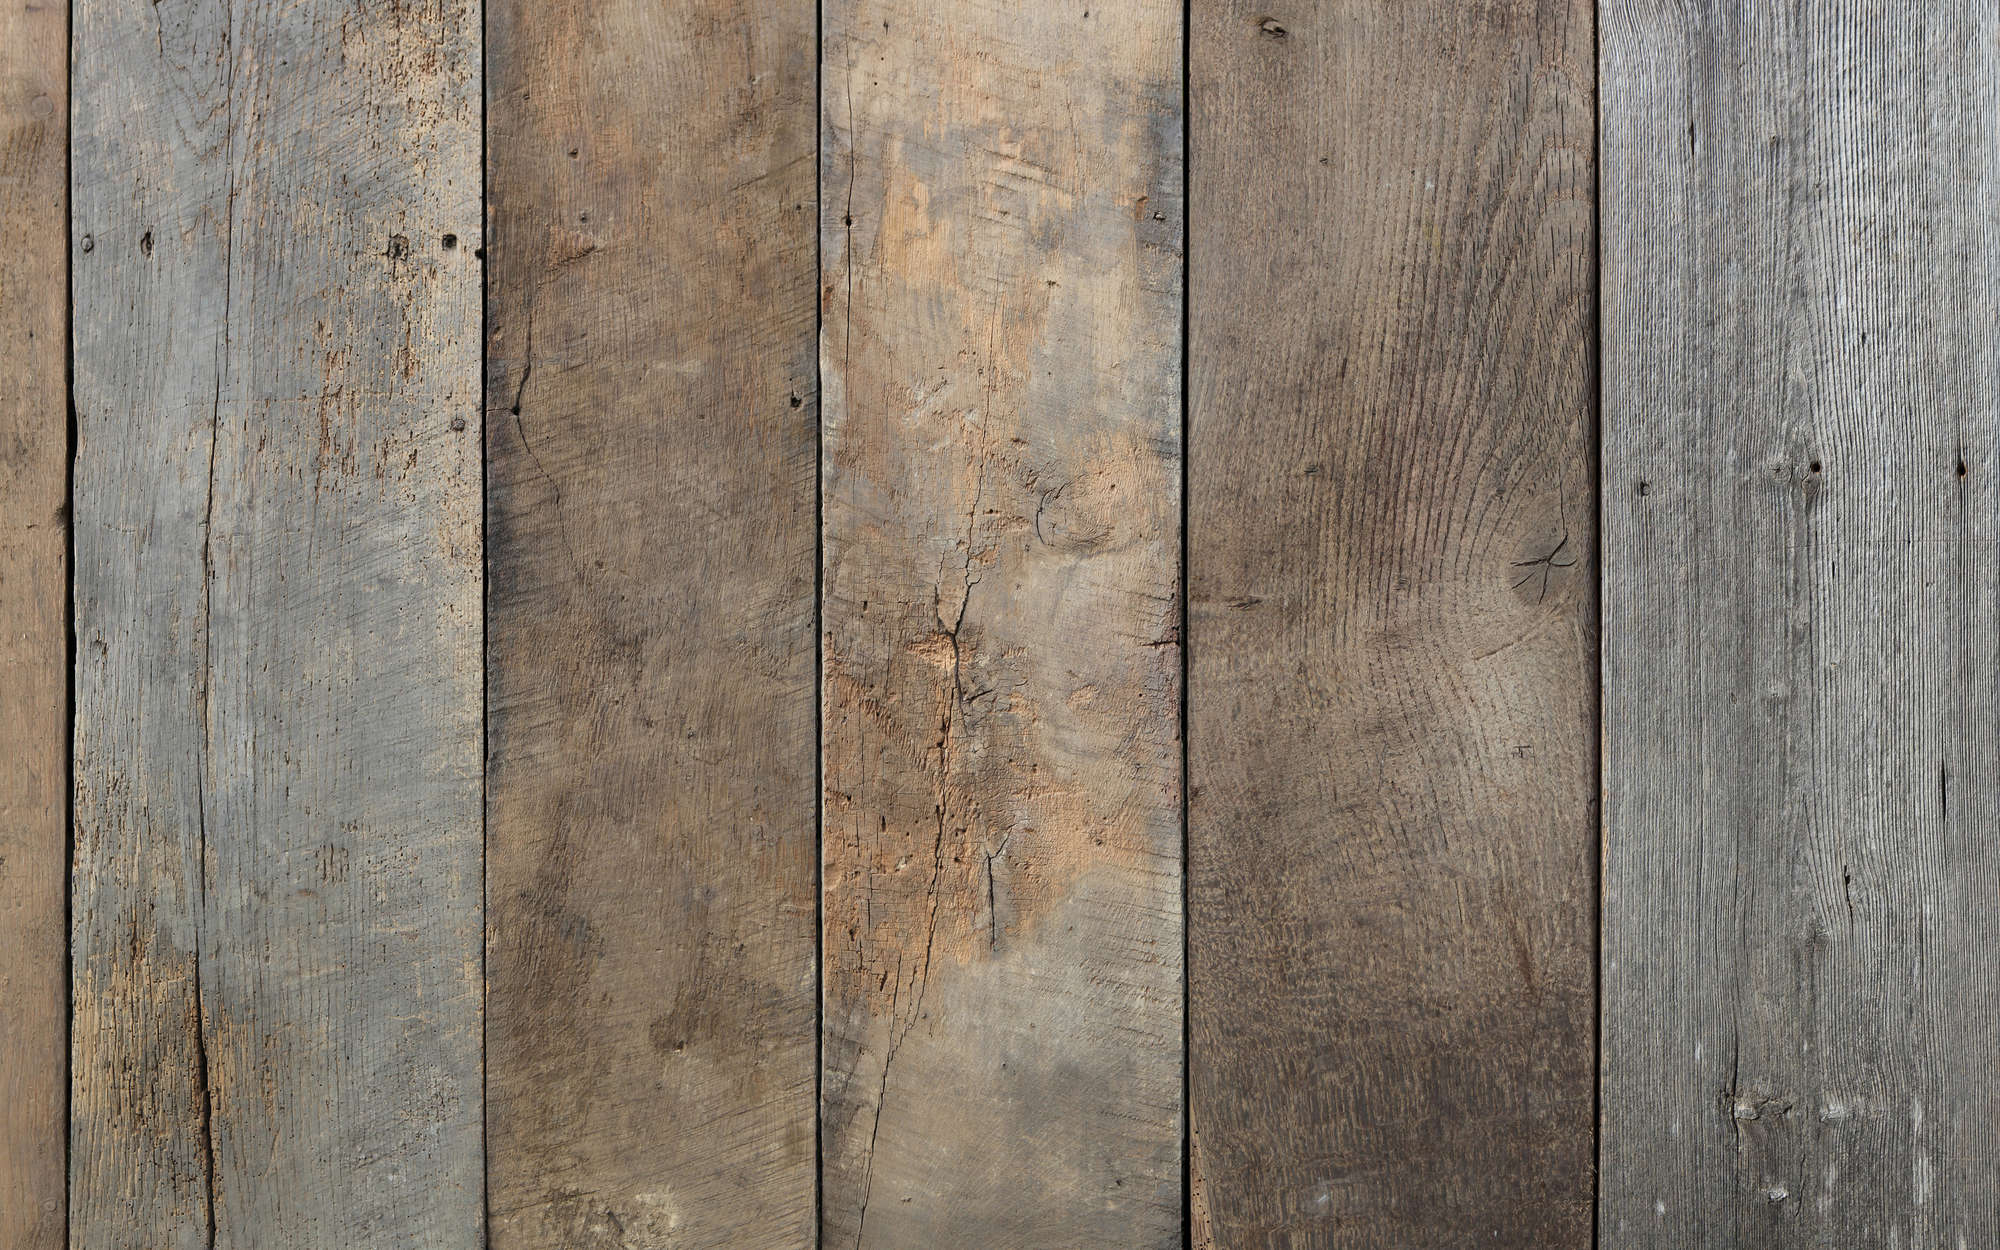             Oude houten vloerdelen muurschildering - parelmoer glad vlies
        